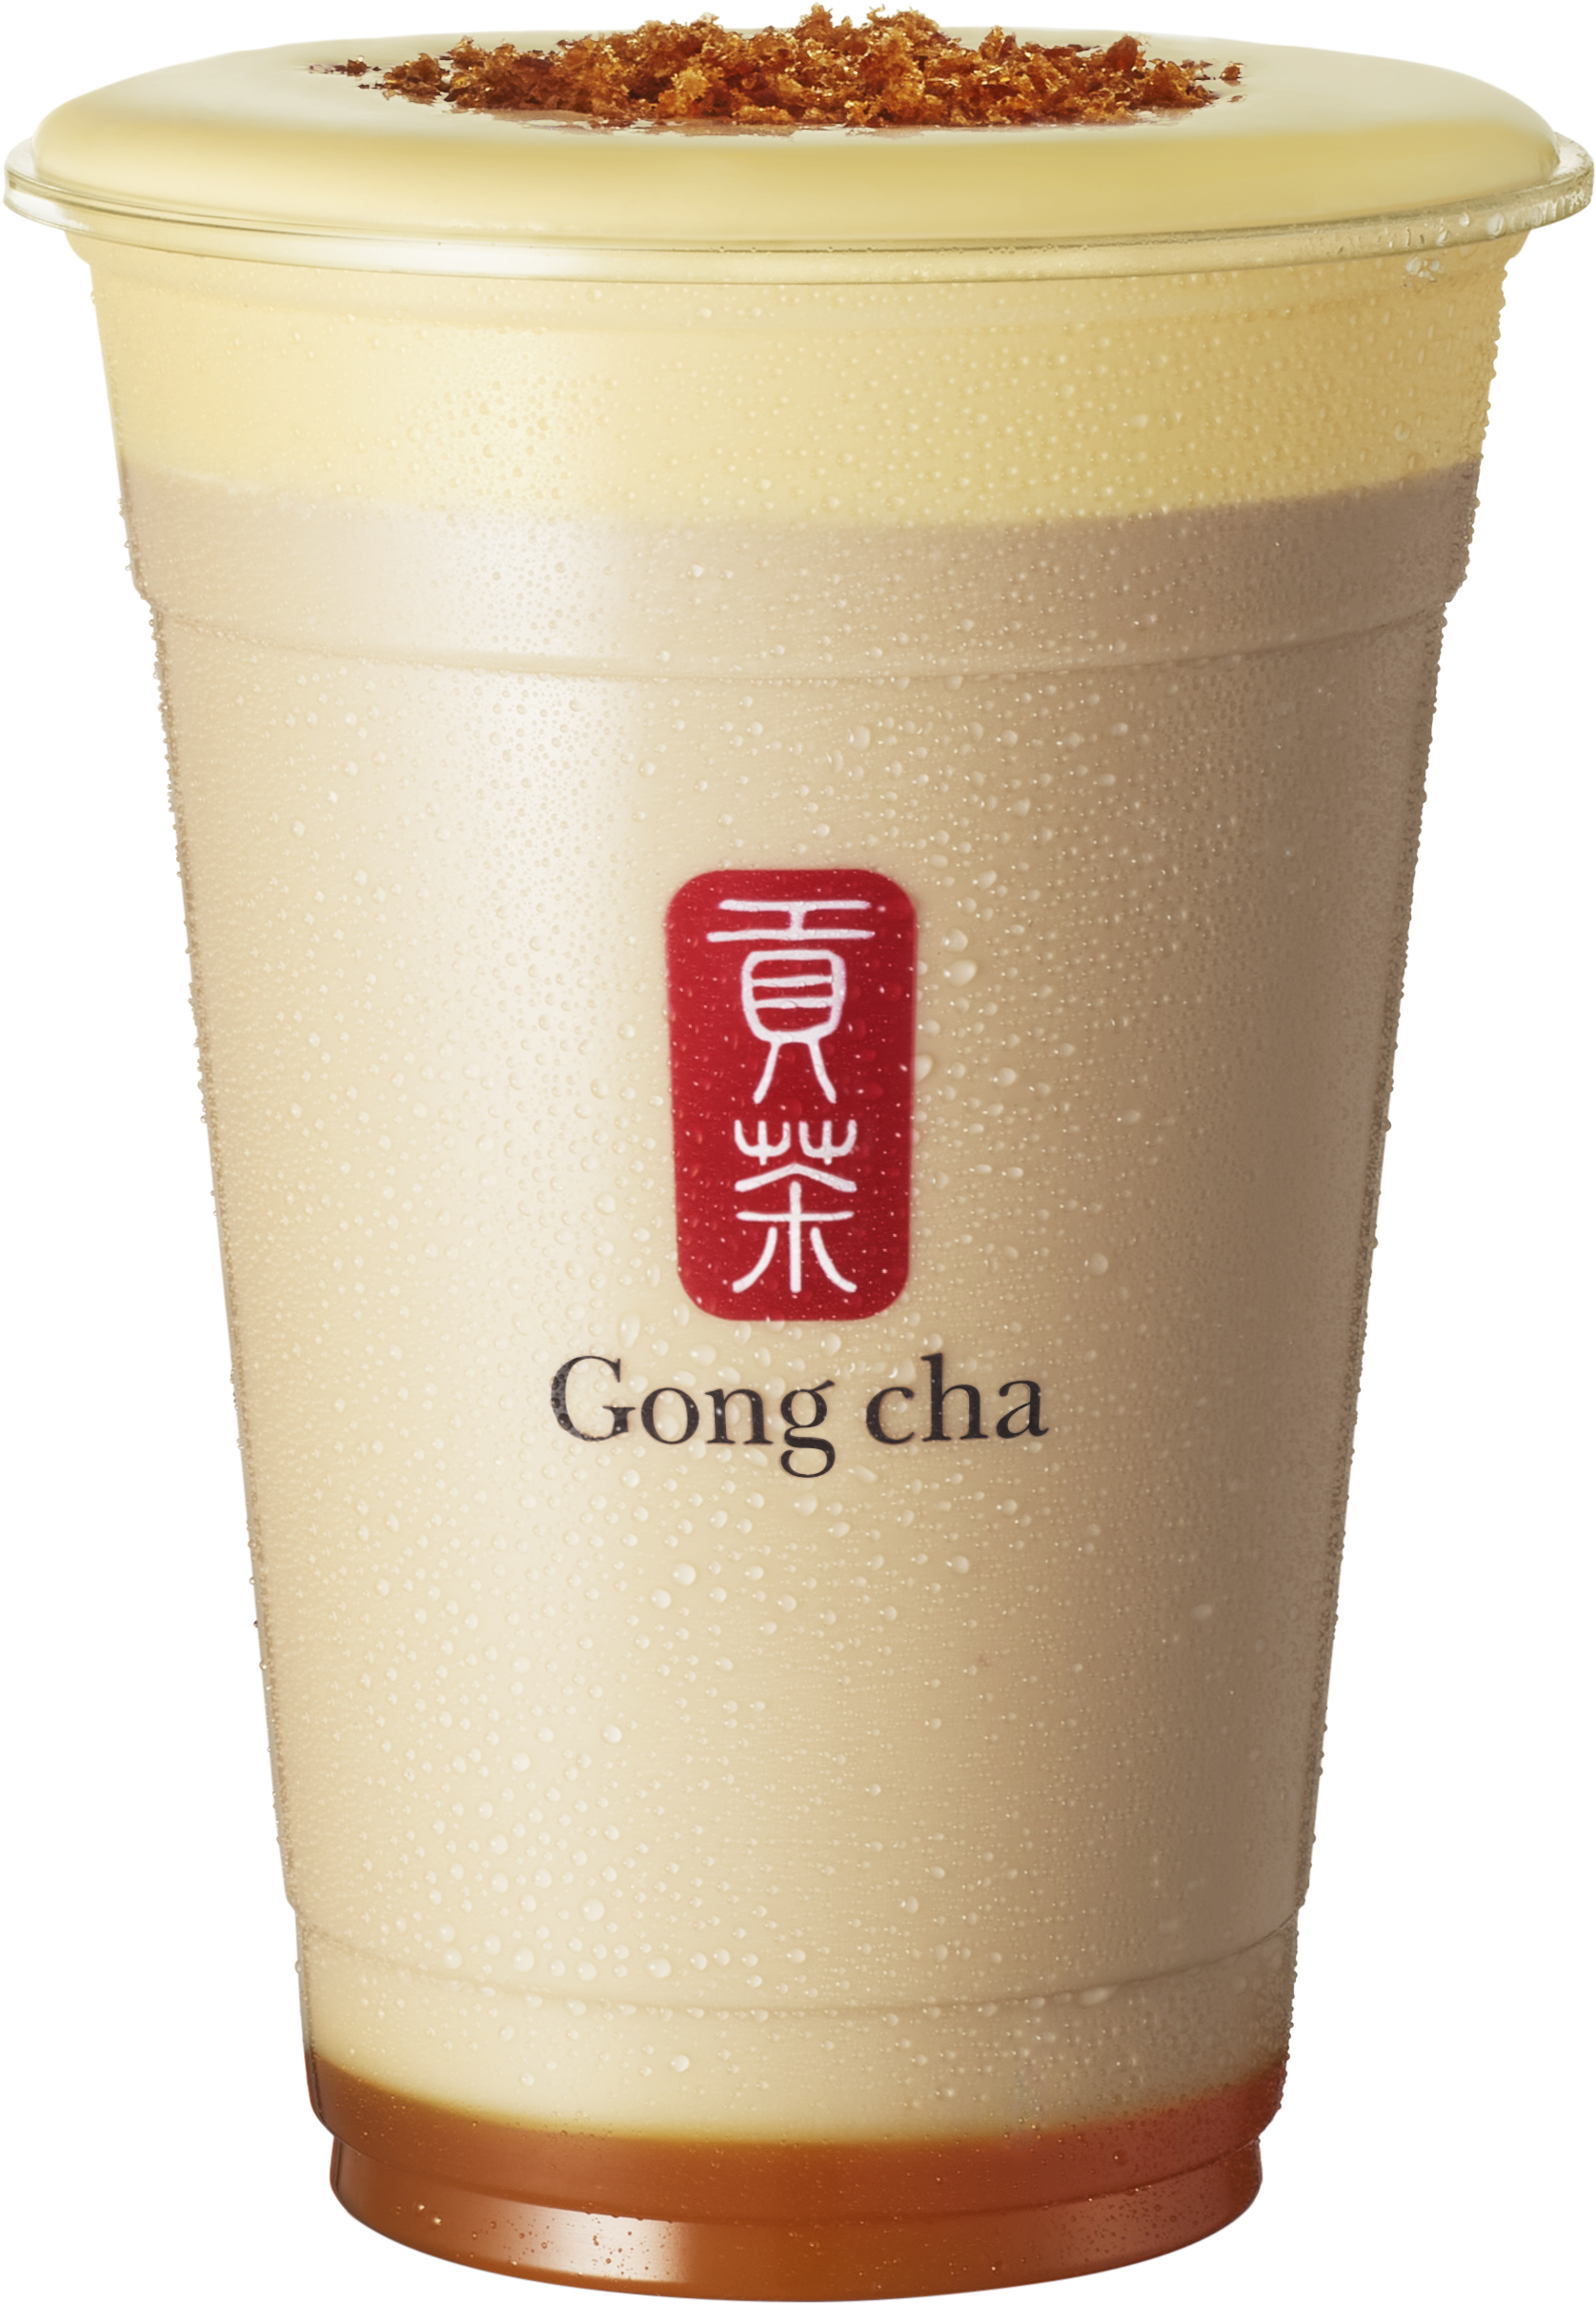 この秋、ゴンチャの新シリーズ発売！デザートのような味わい「Gong cha Tea Dessert」 第一弾は ”クレームブリュレ”のサブ画像4